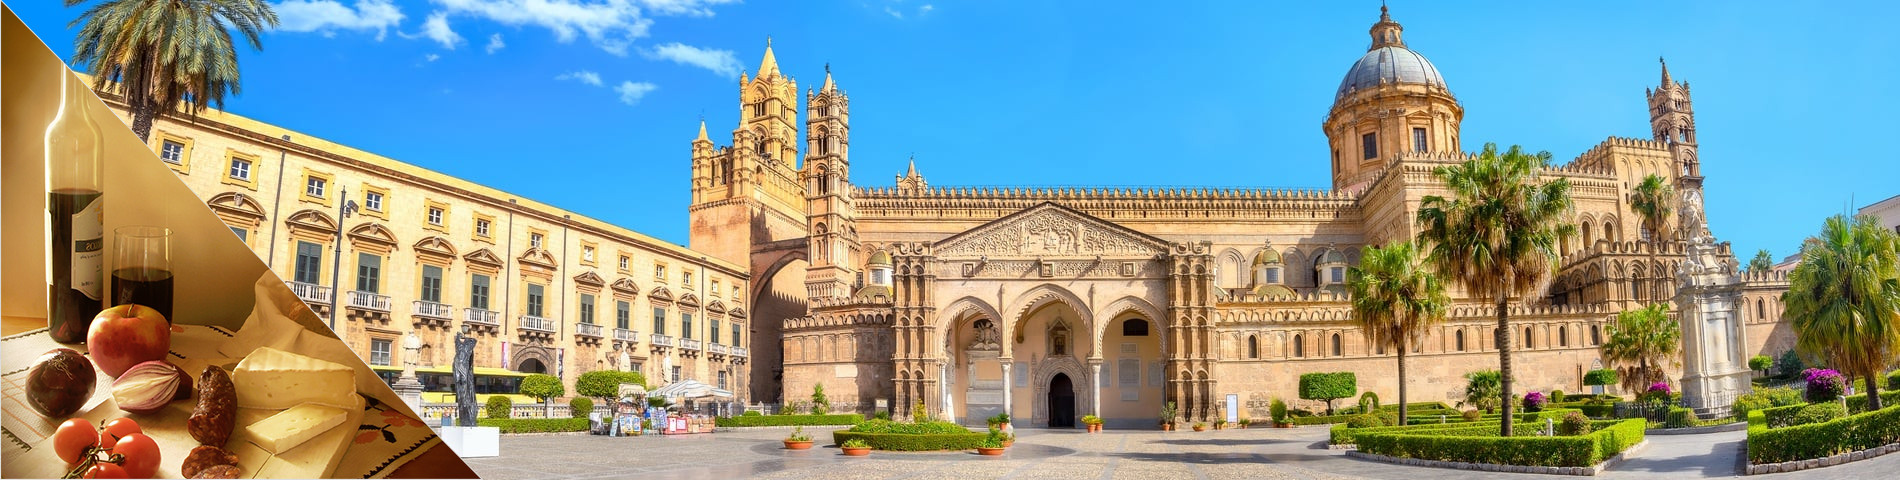 Palermo - Italienisch & Kultur